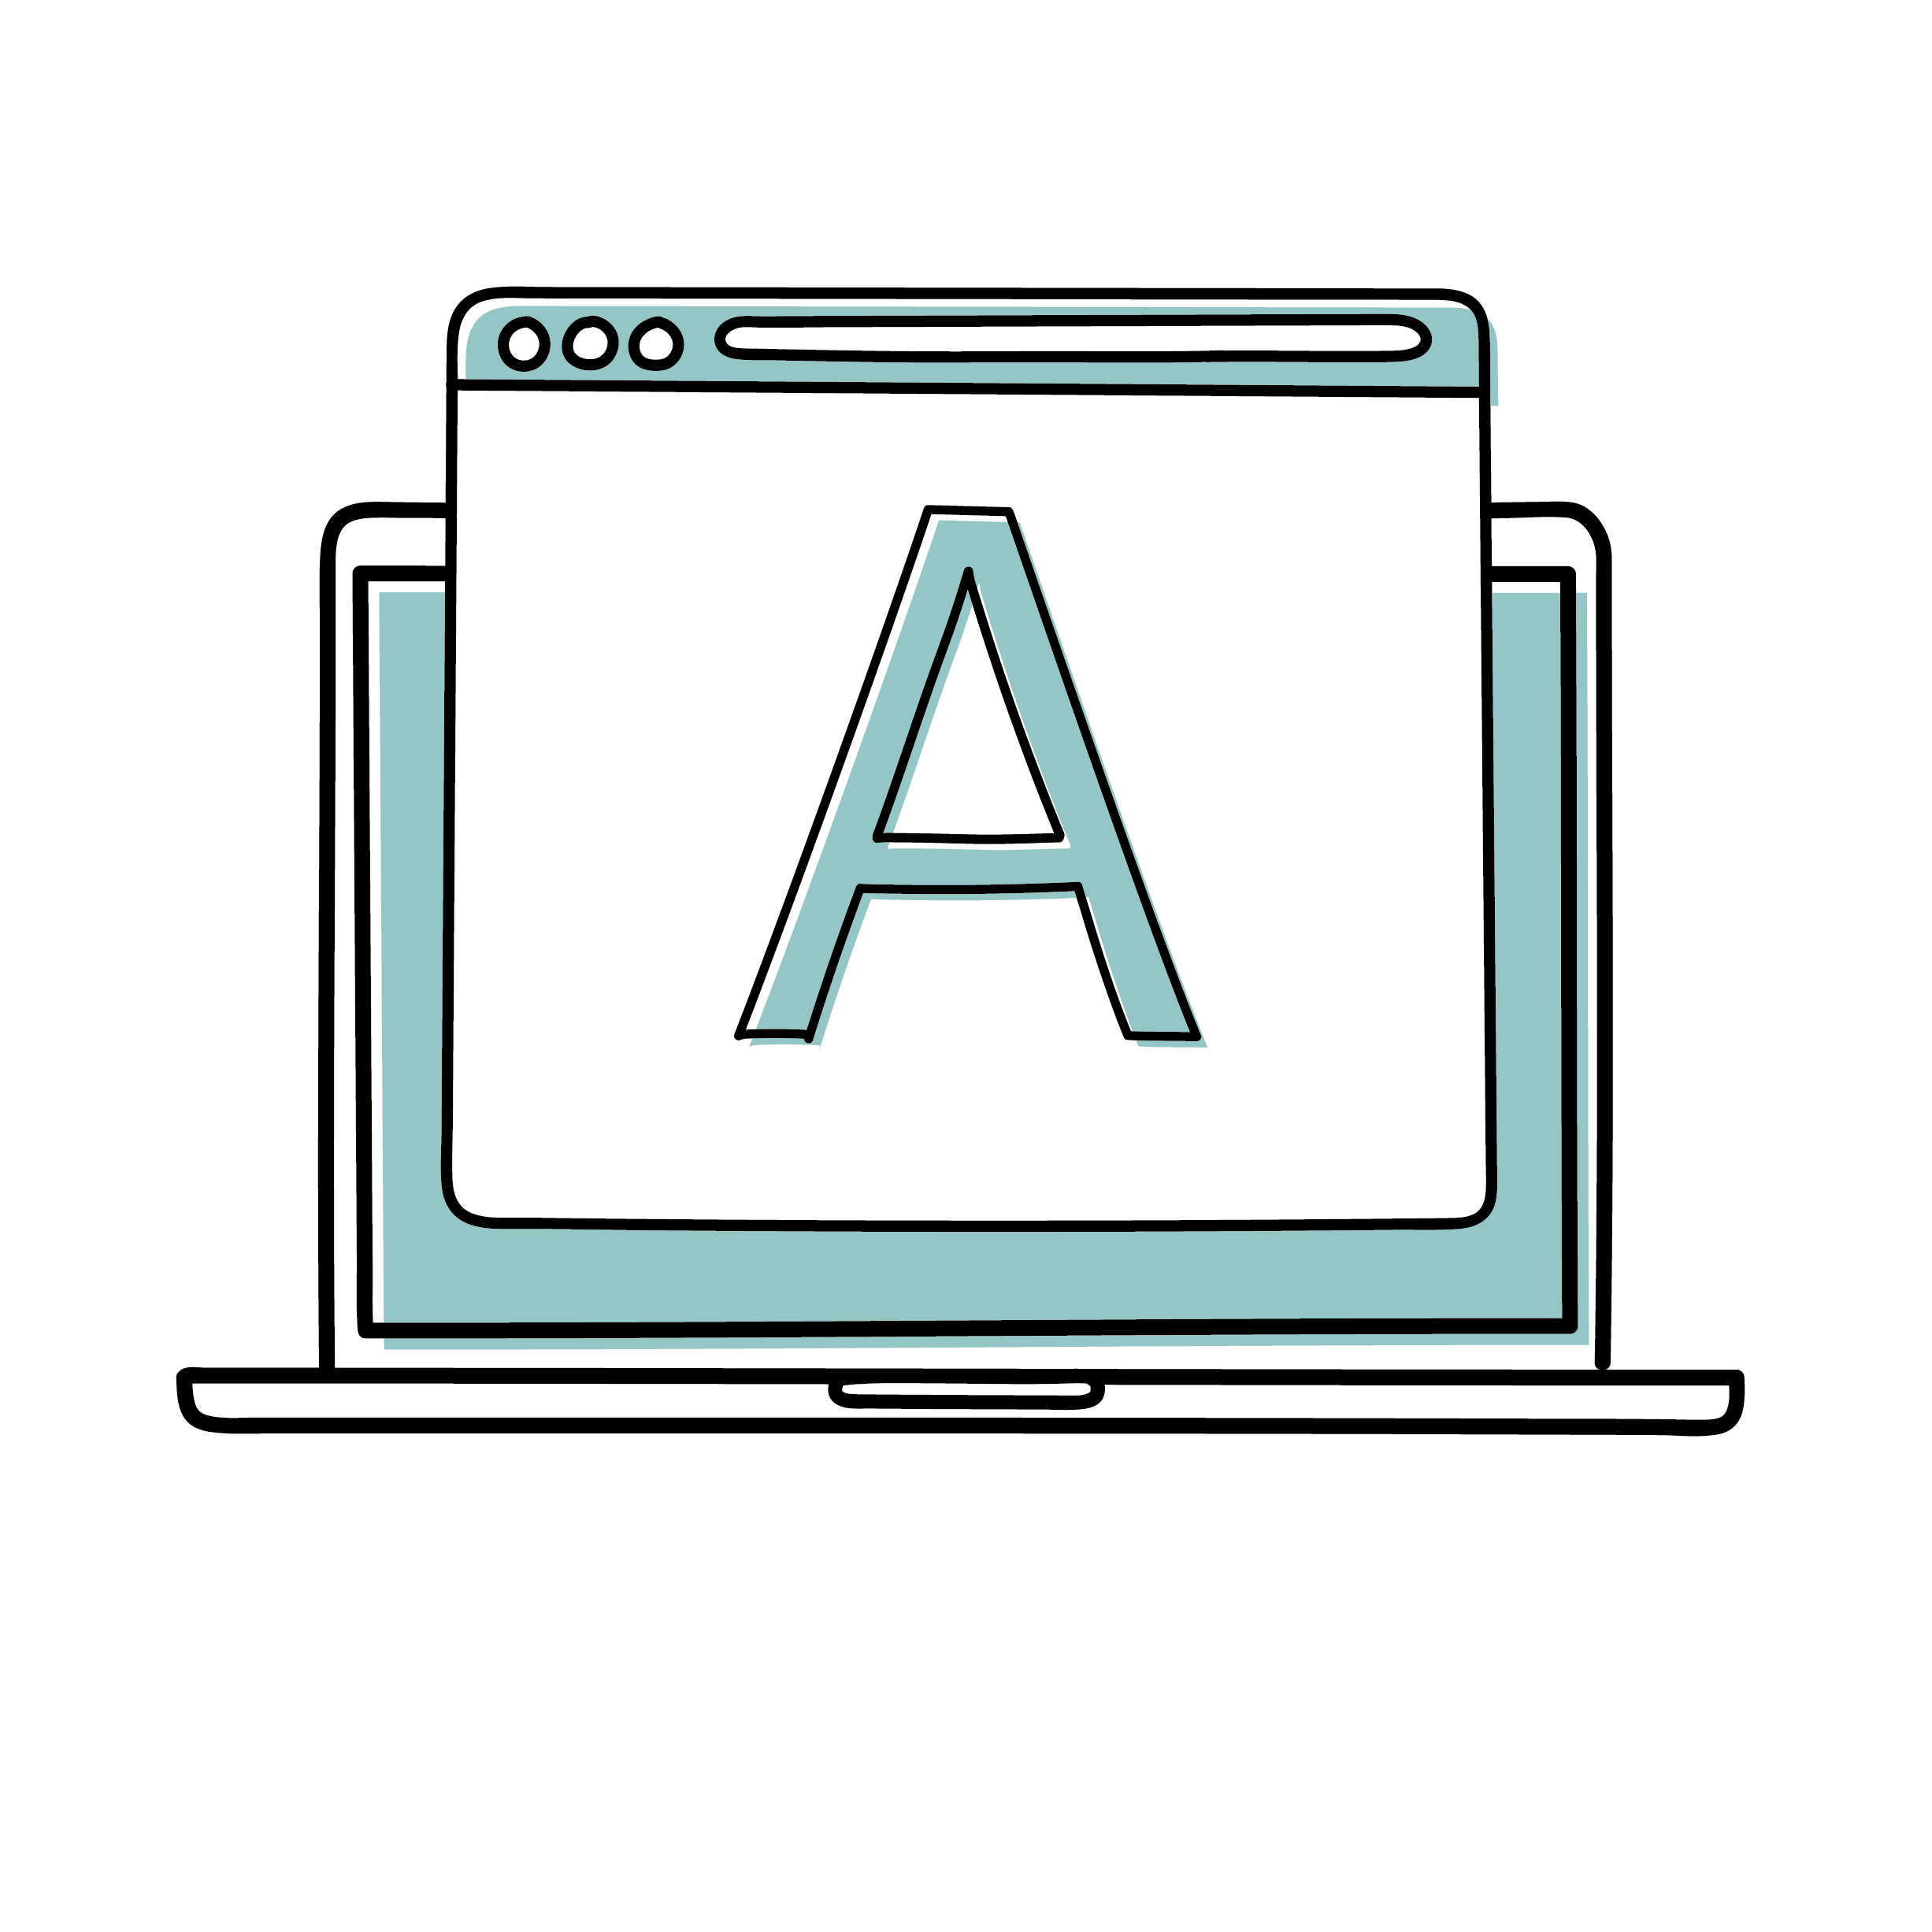 Abテストのaパターンを表示したパソコンのイラスト デジマイラスト デジタルマーケティング 広告業界のイラスト 無料dl 商用利用可